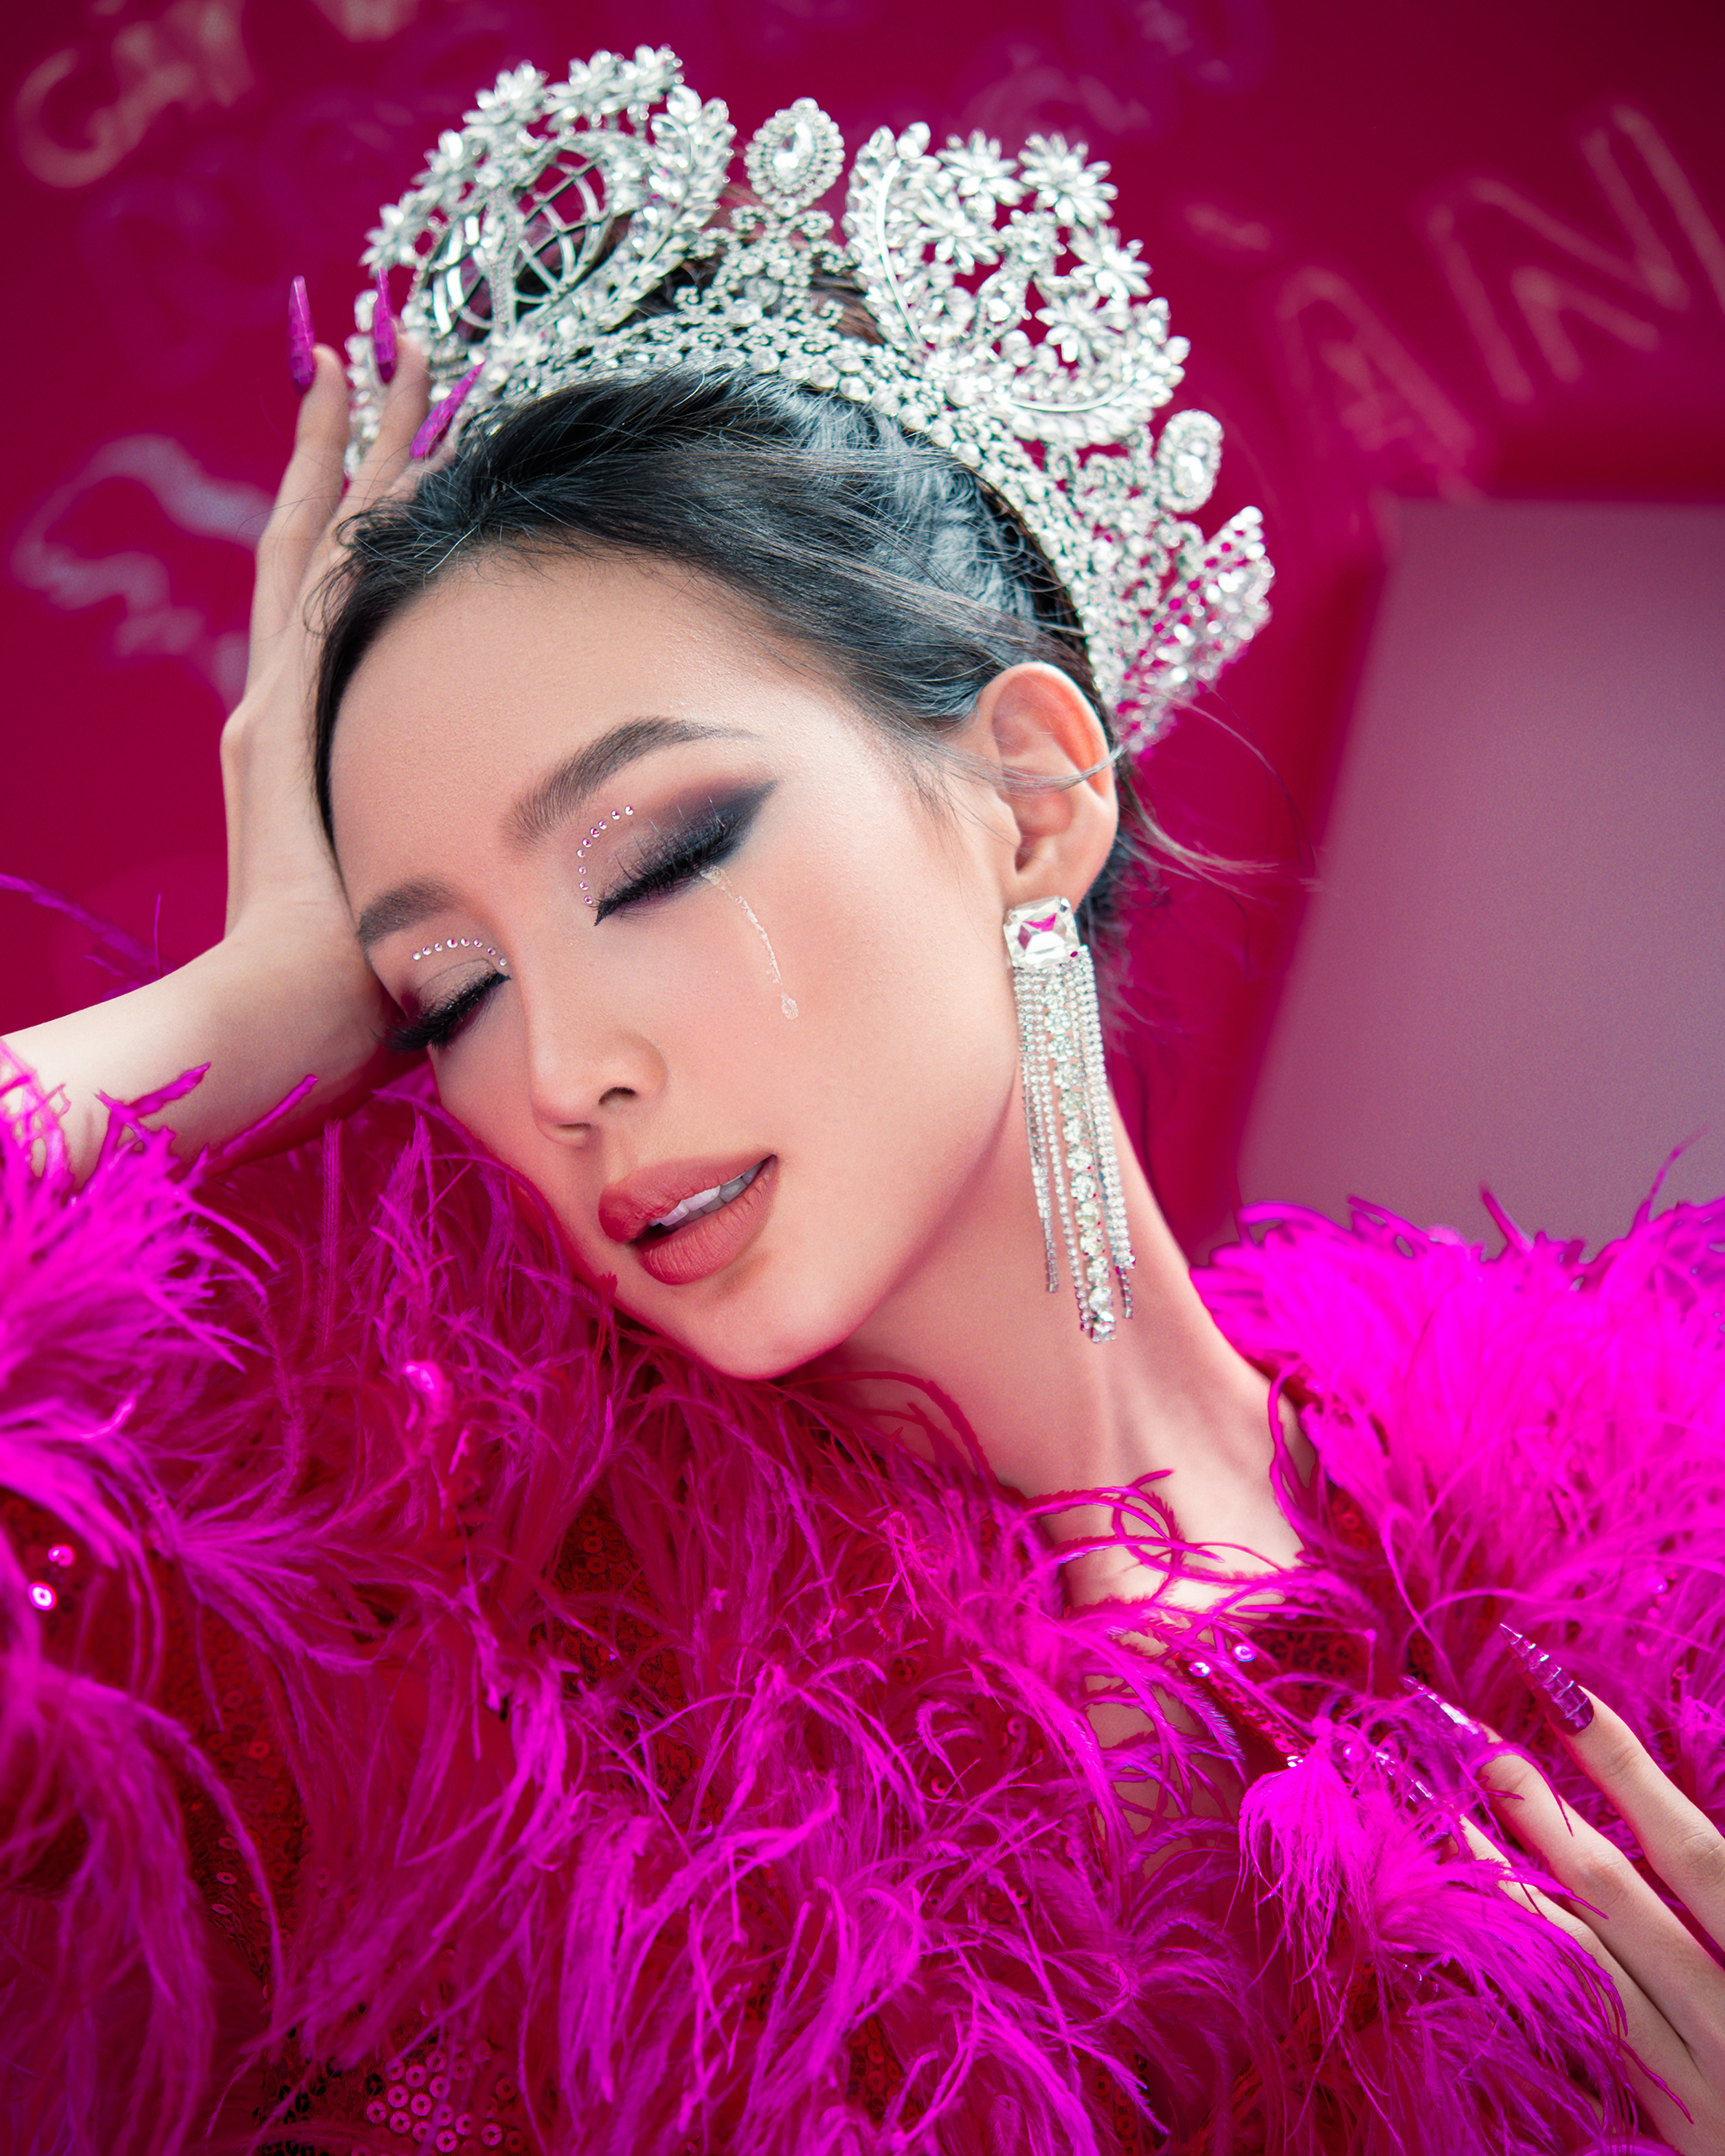 Hoa hậu Bảo Ngọc khác lạ trong bộ ảnh đầu xuân - Ảnh 4.